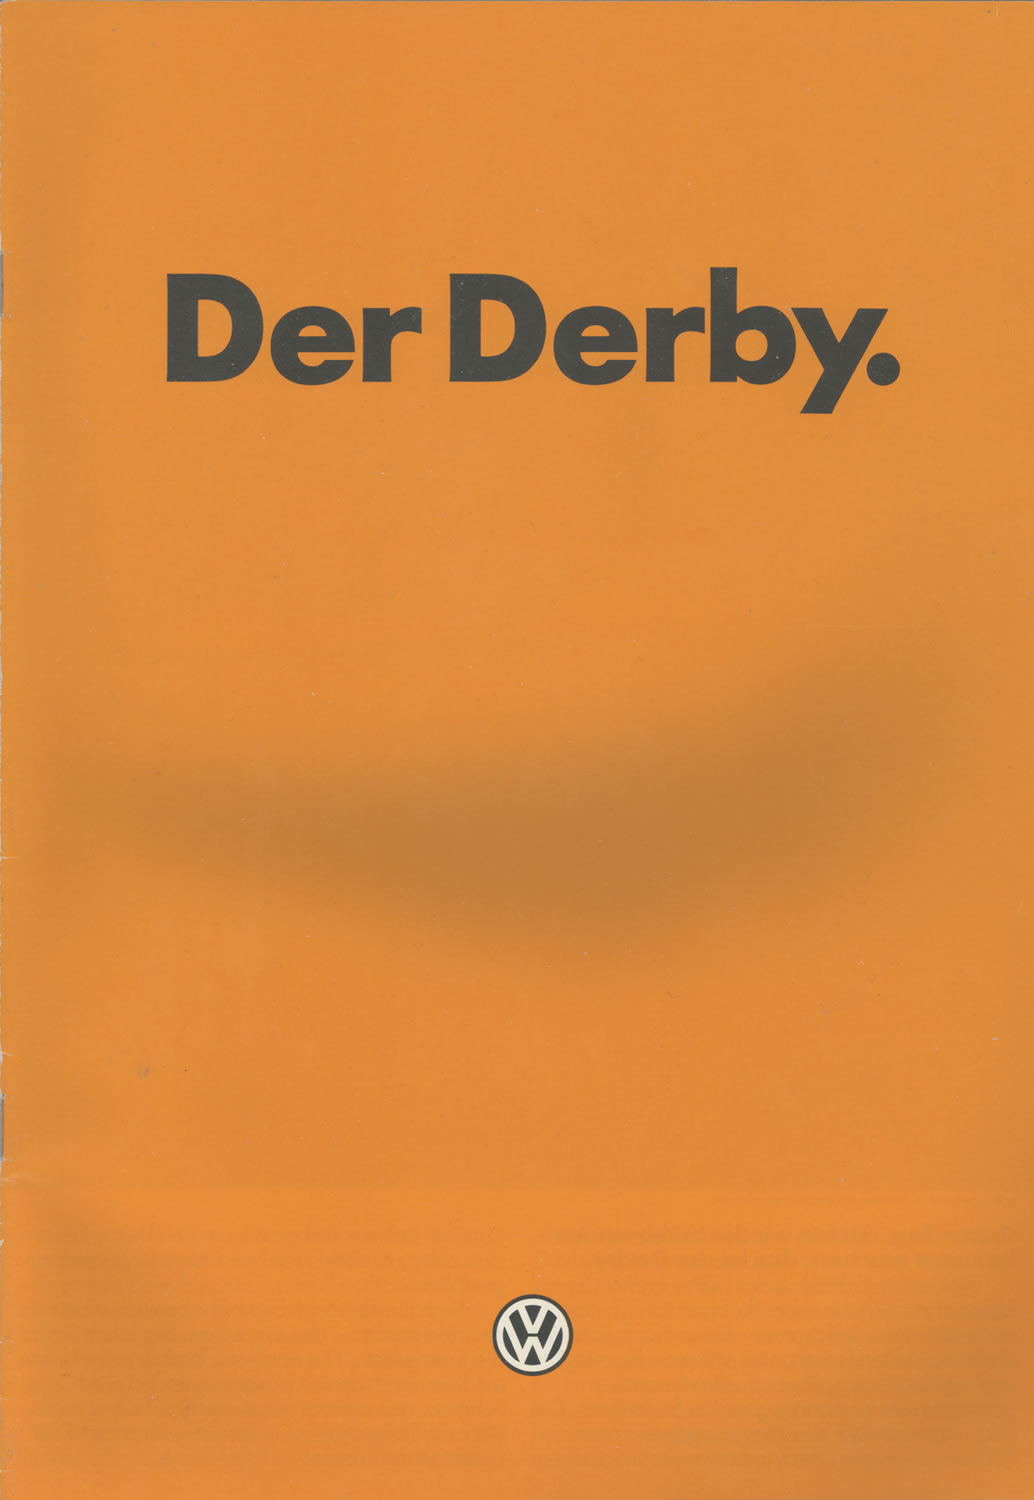 VW Derby